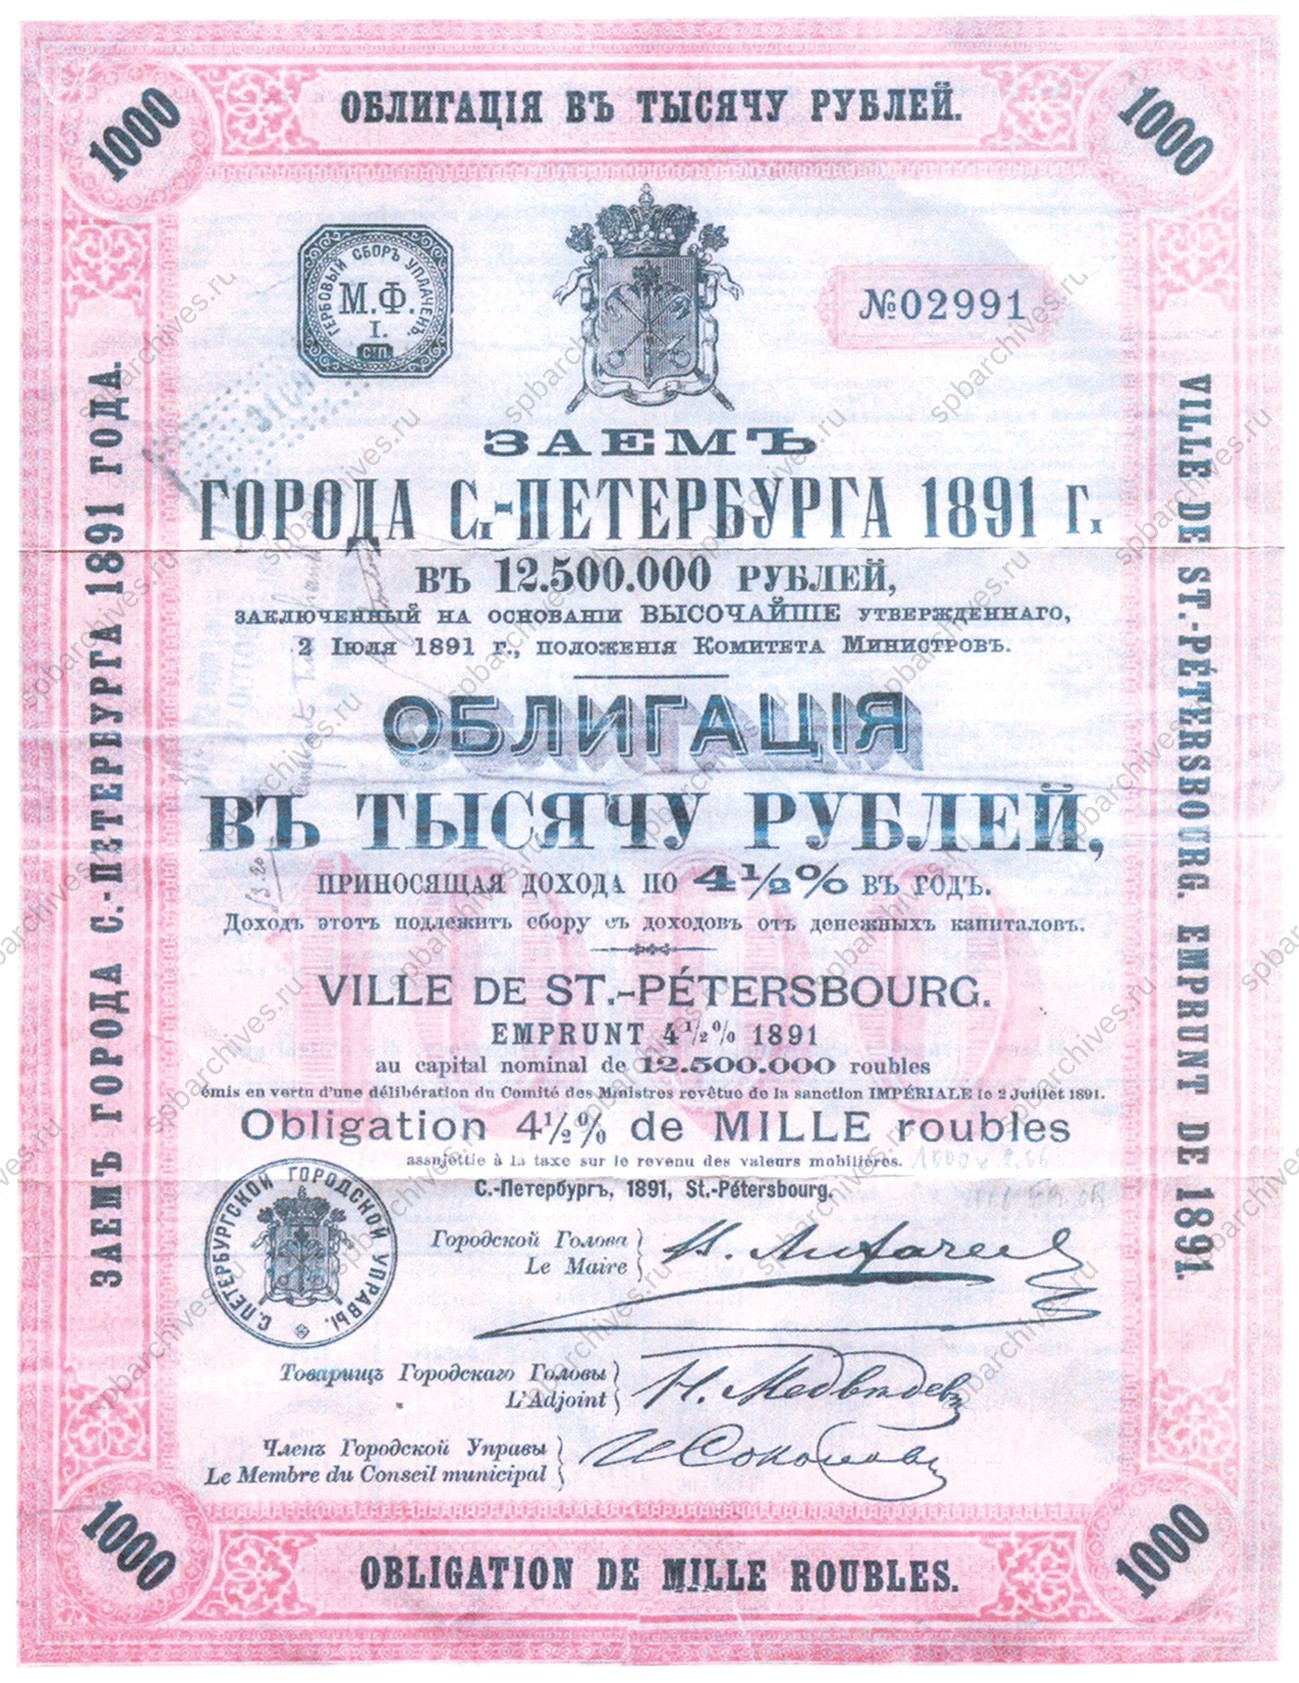 Заём города Санкт‑Петербурга 1891 г.<br />
<em>Личный архив Н.В.Салмановой.</em>